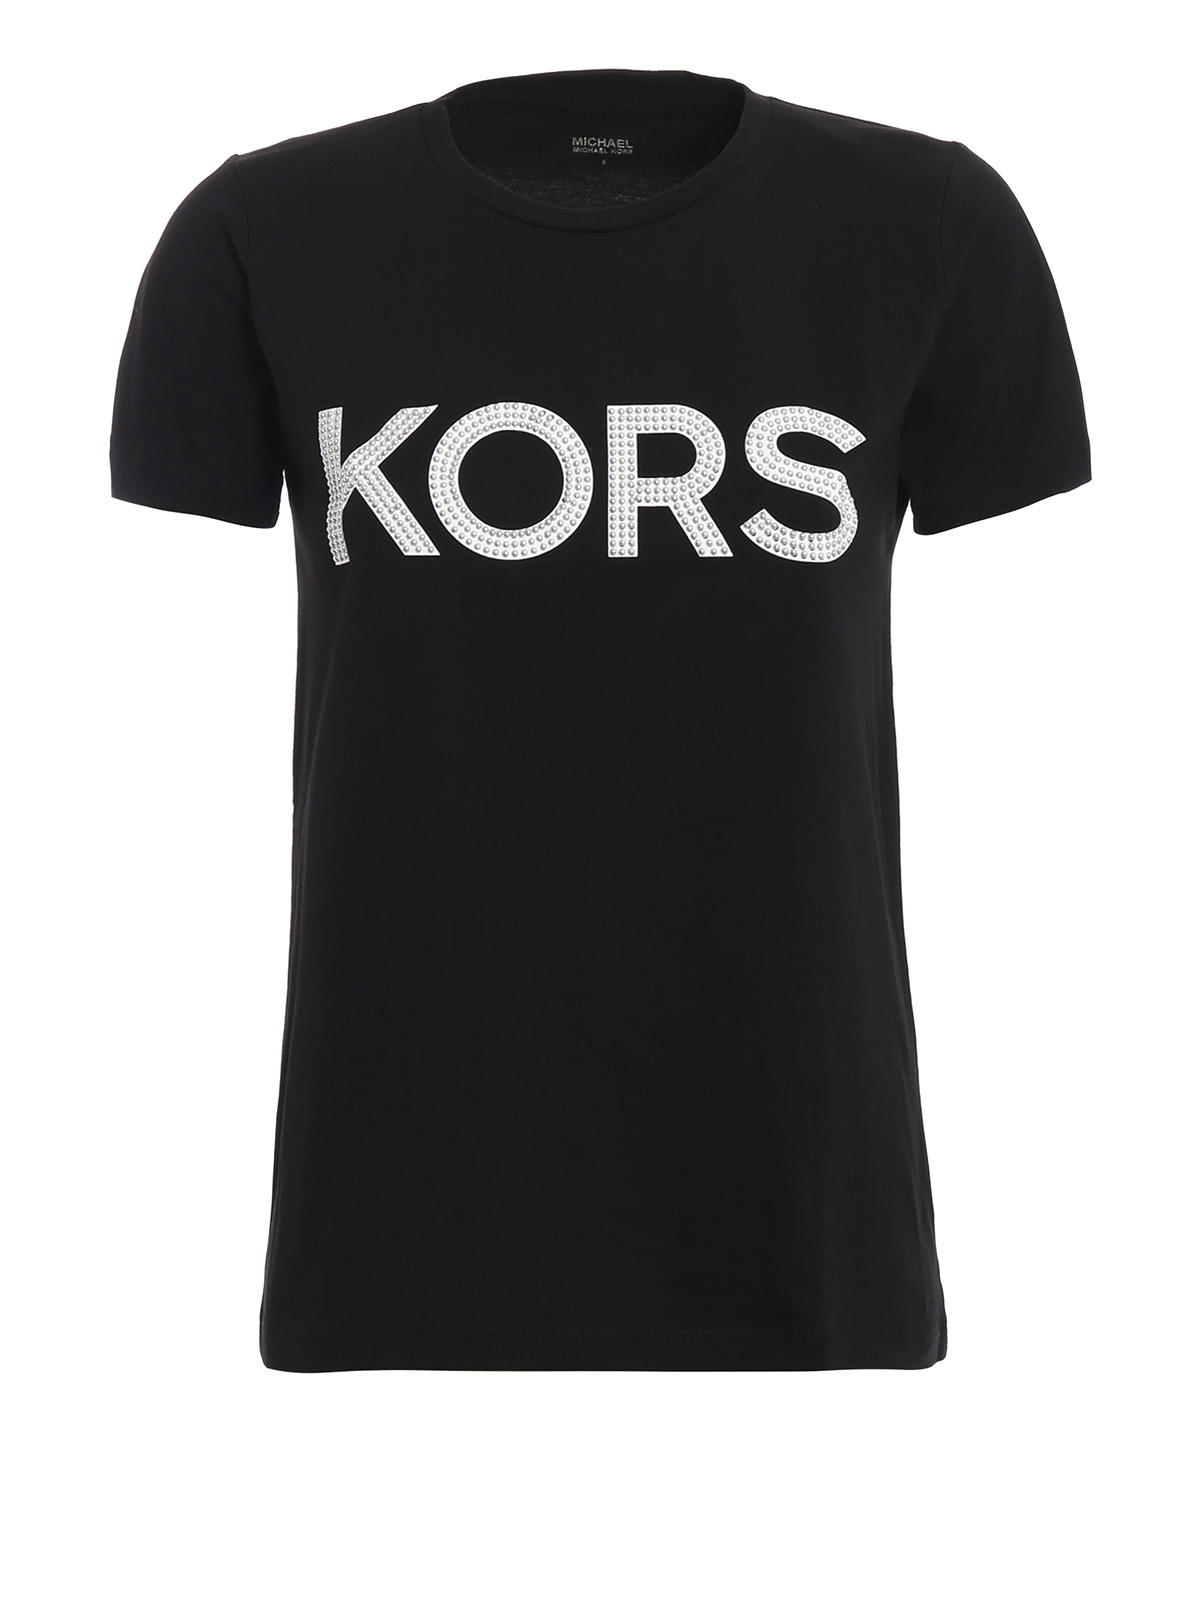 T-shirts Michael Kors - Studded Kors logo black cotton T-shirt ...